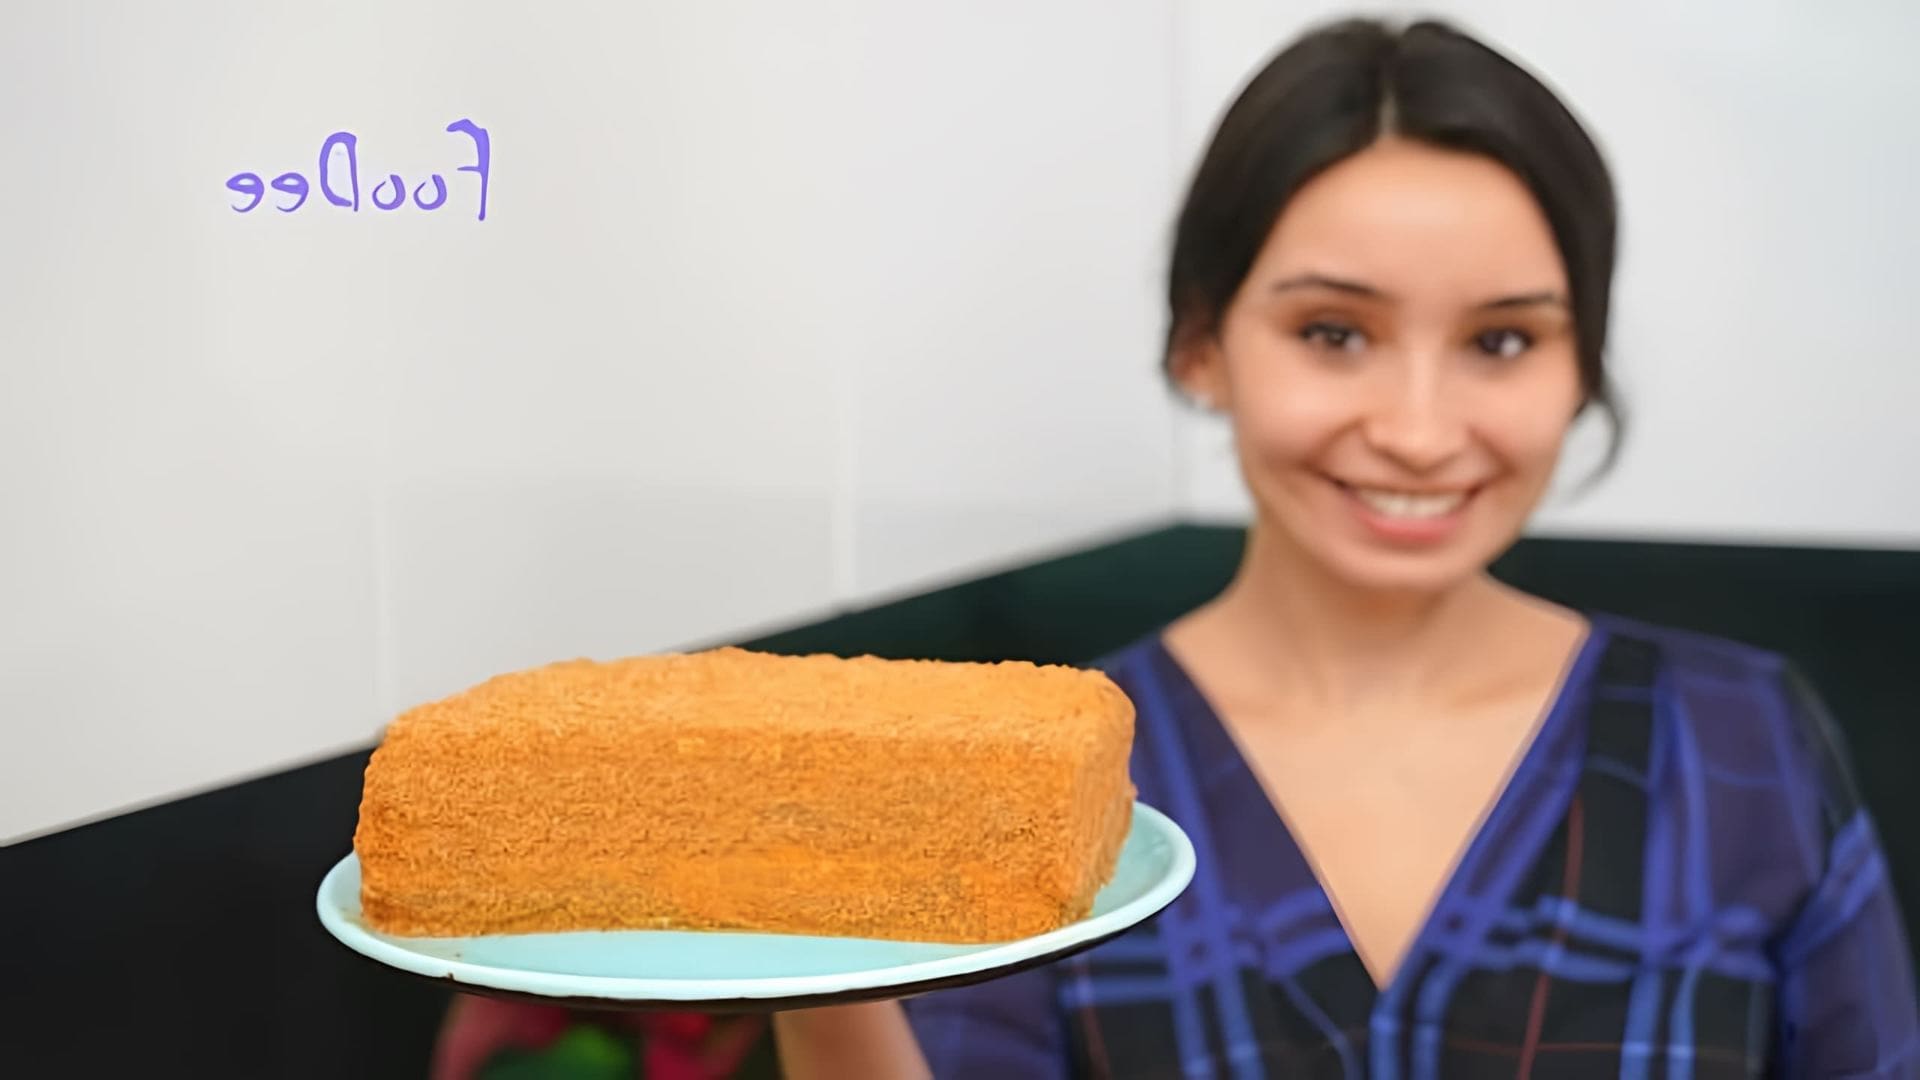 В этом видео демонстрируется рецепт приготовления торта Медовик, который готовится всего за 30 минут